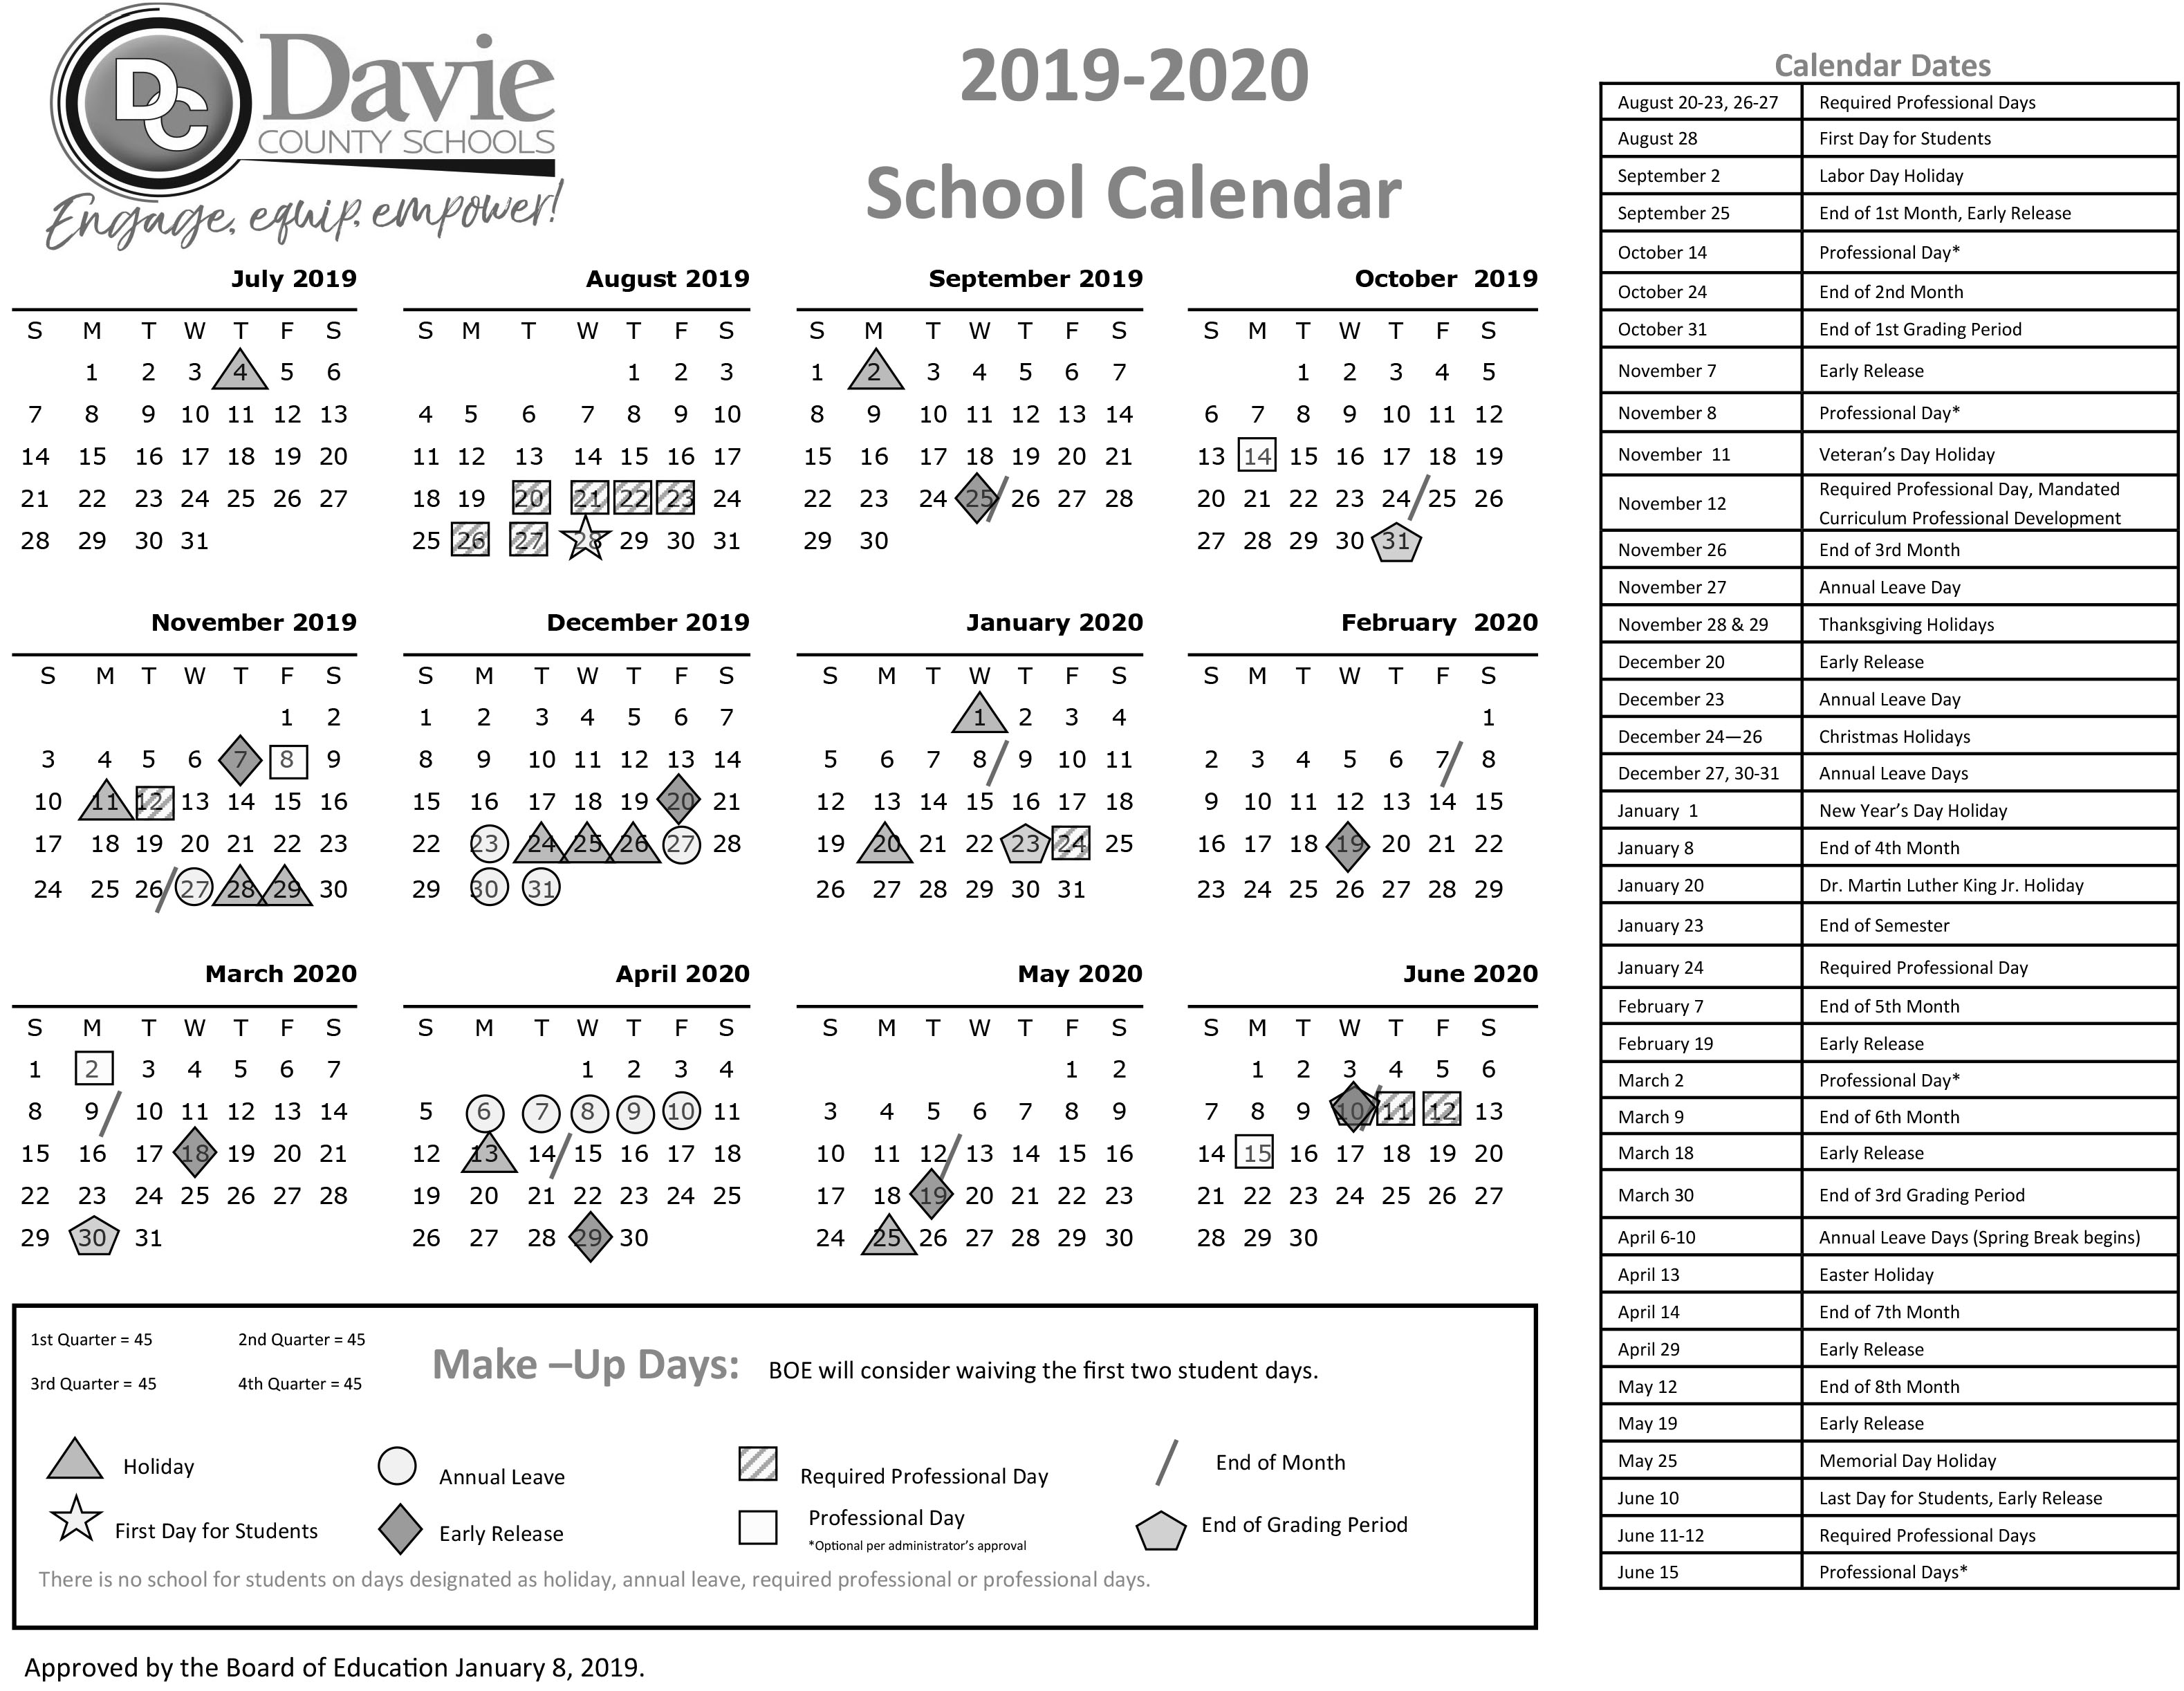 2019 2020DavieSchoolCalendar 1 8 19